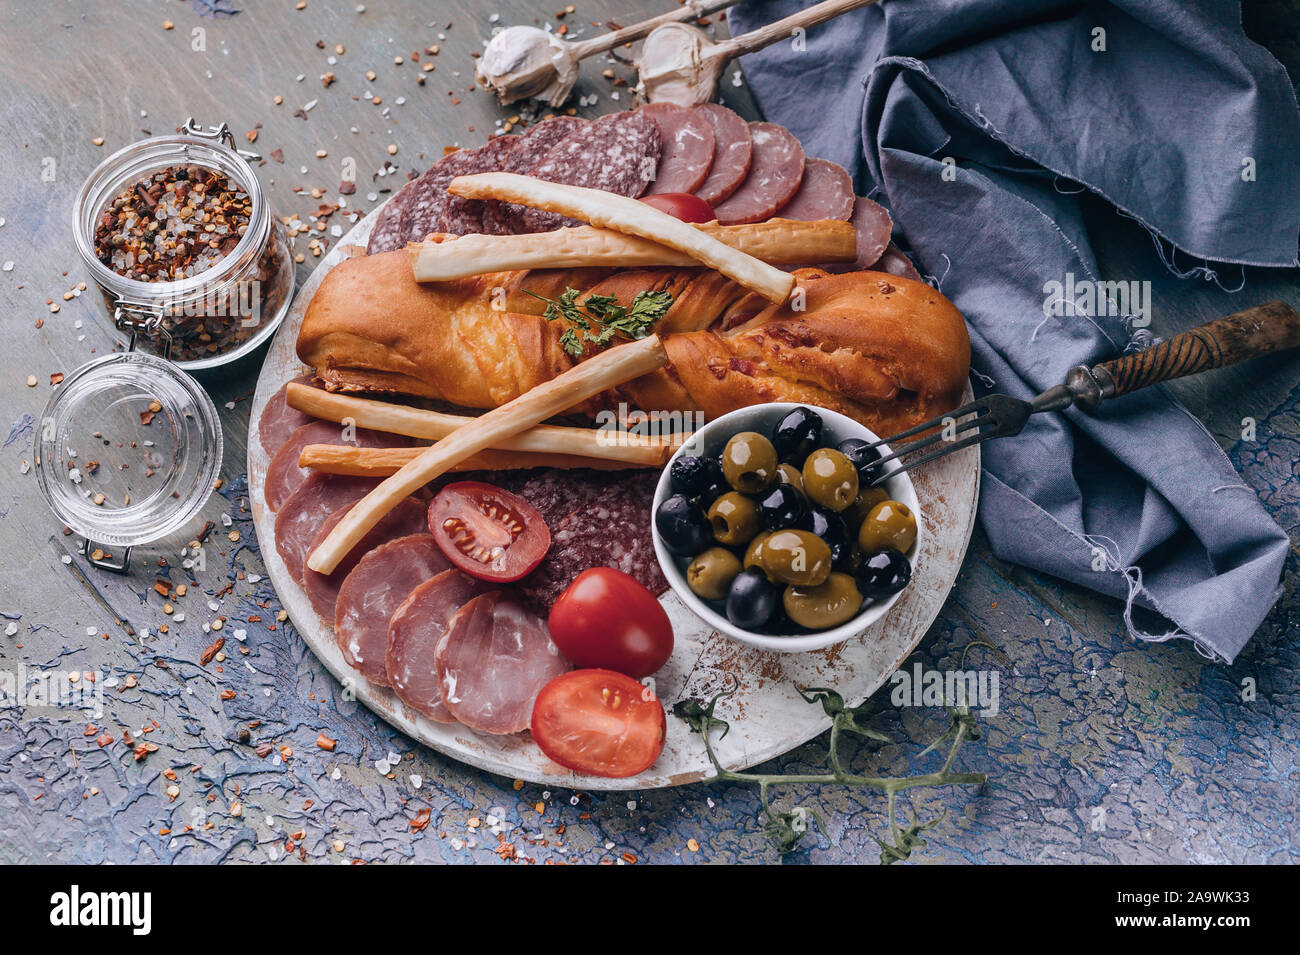 Mediterrane Speisen. Ansicht von oben sortiert aus Fleisch und Käse auf einem runden Schneidebrett. Roh geräucherter Wurst, Schinken, Käse, Oliven. Platz kopieren Stockfoto